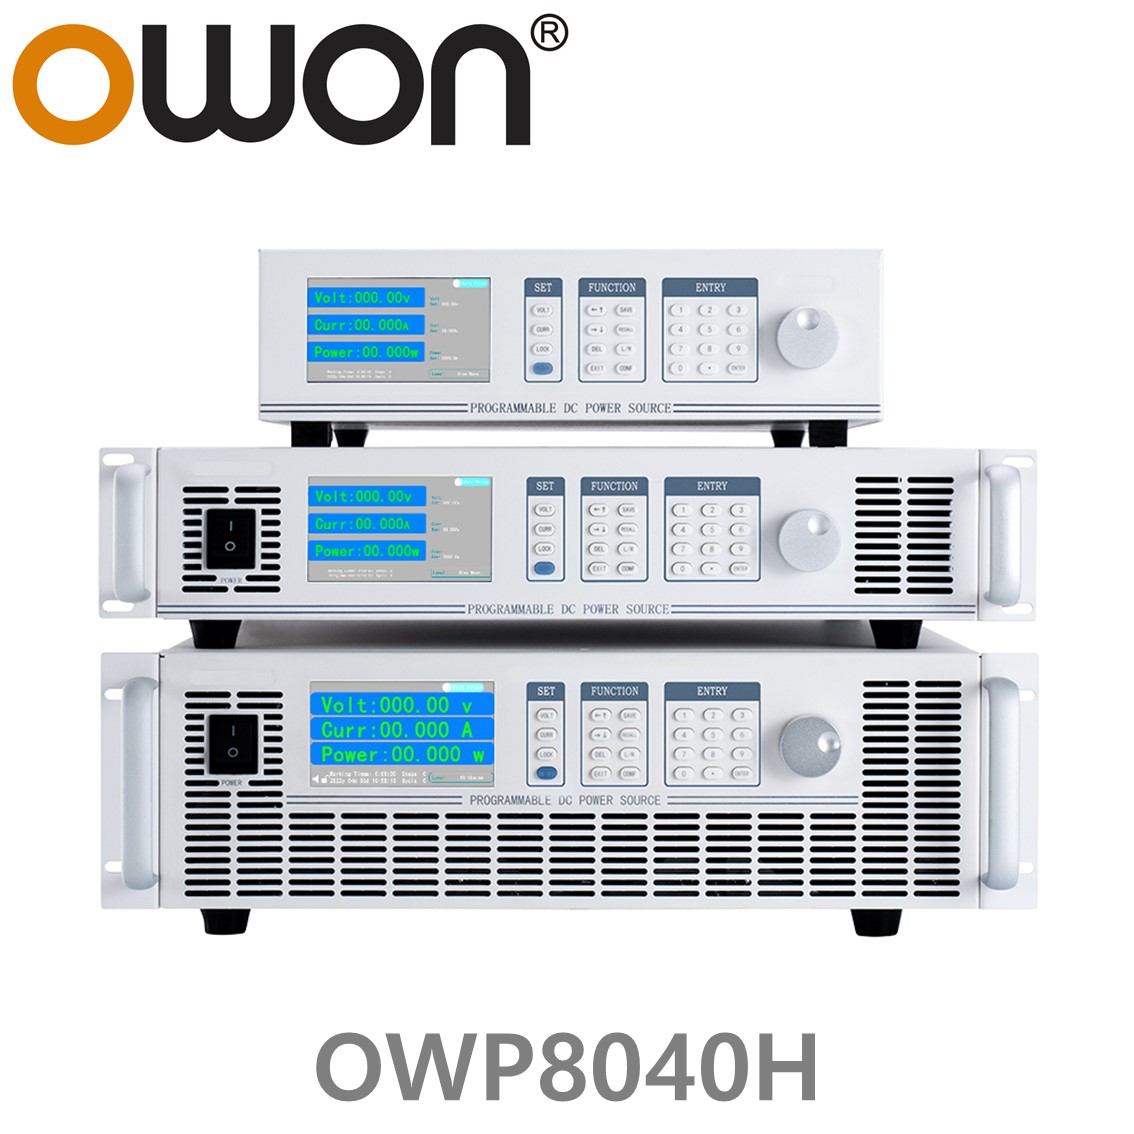 [ OWON ] OWP8040H 고전력 DC파워서플라이, 0-400.00V / 0-25.000A / 8000.0W DC전원공급장치